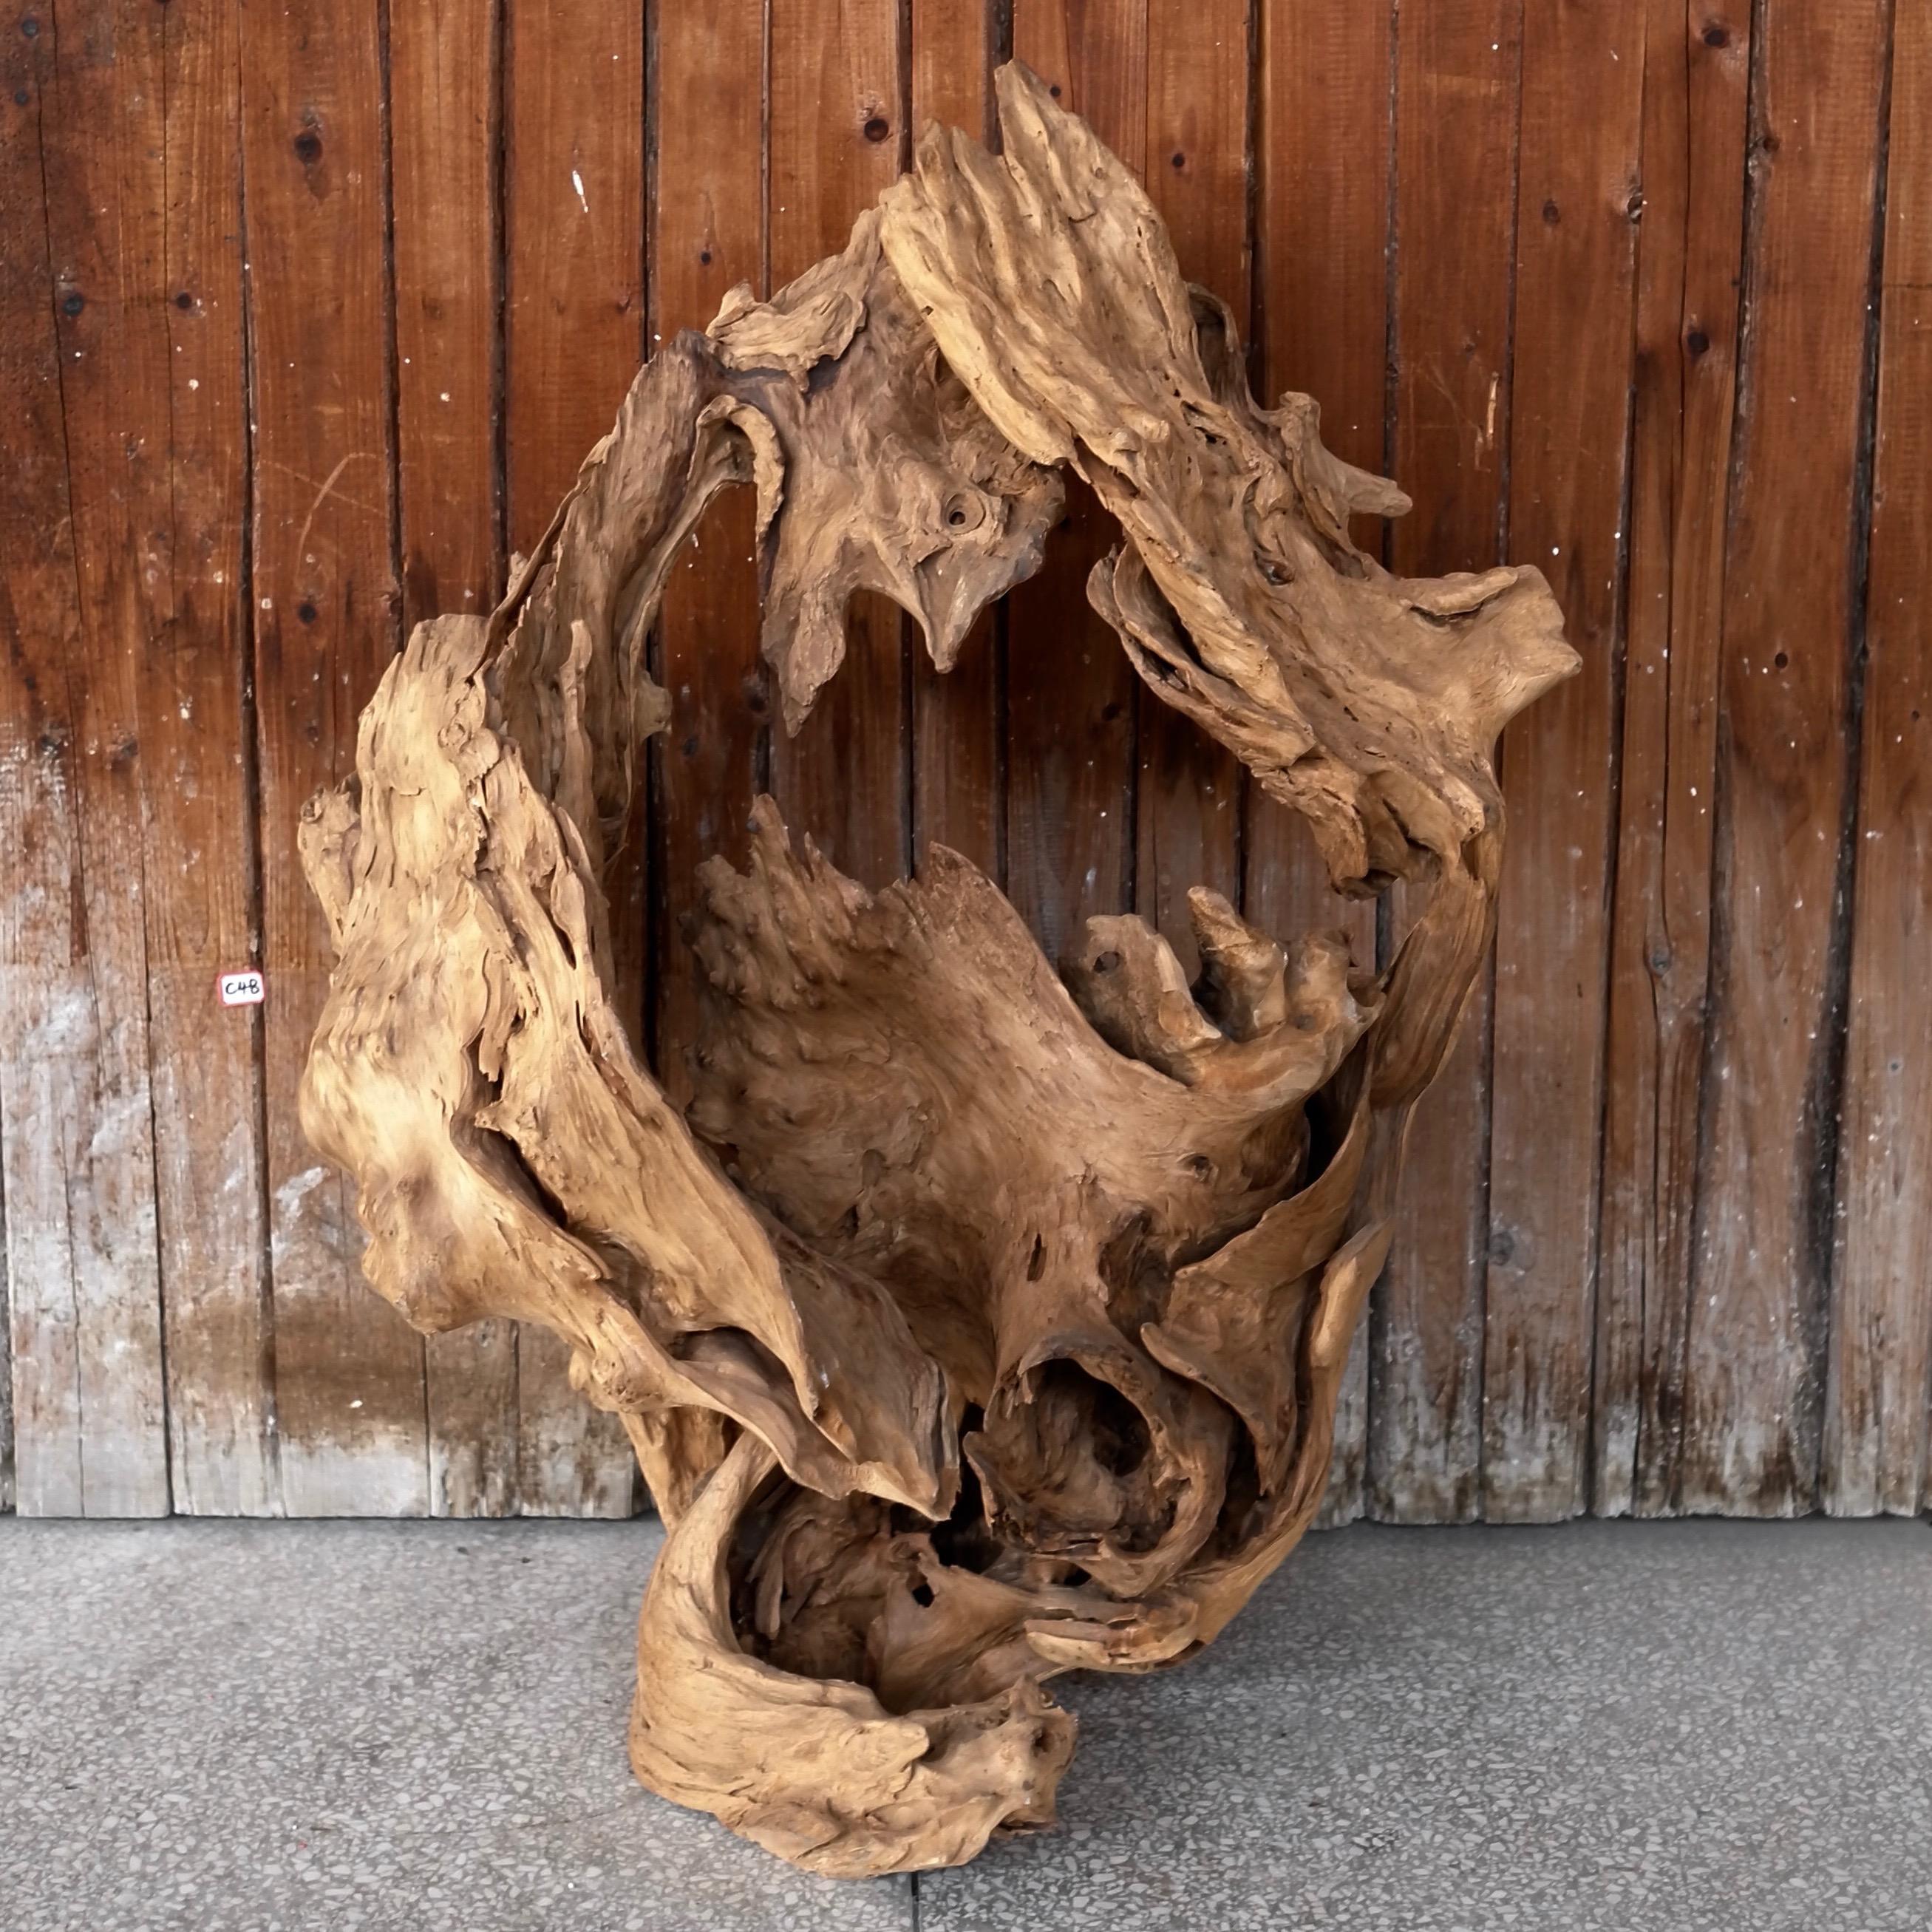 Natural wood sculpture reminiscent of a stylized interstellar nebula 18” x 28” x 35”
an organic sculpture for the modern scholar's desk.